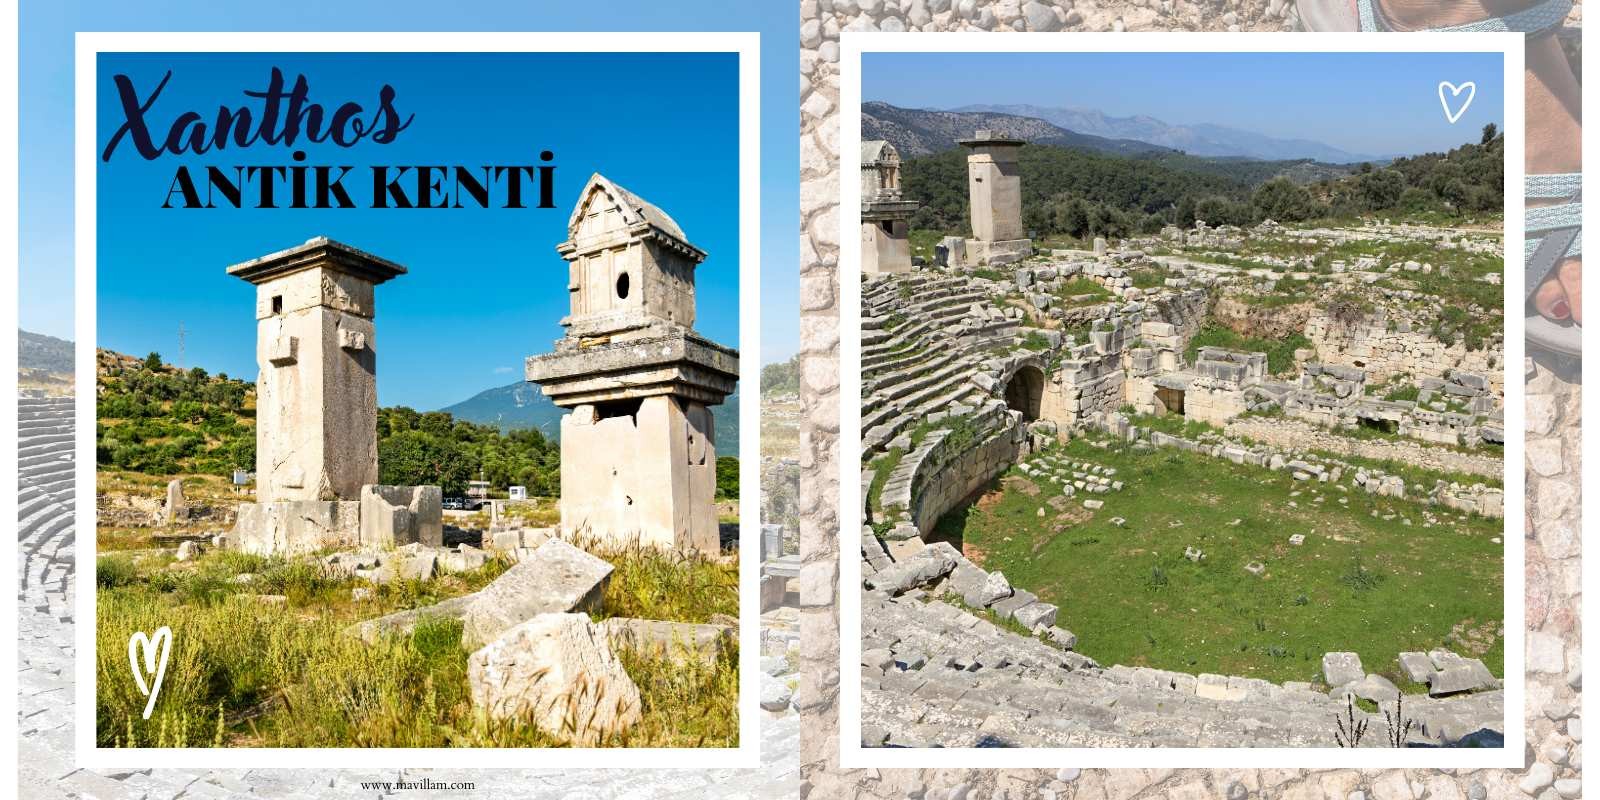 Xanthos Antik Kenti - Antik Kentler Serisi